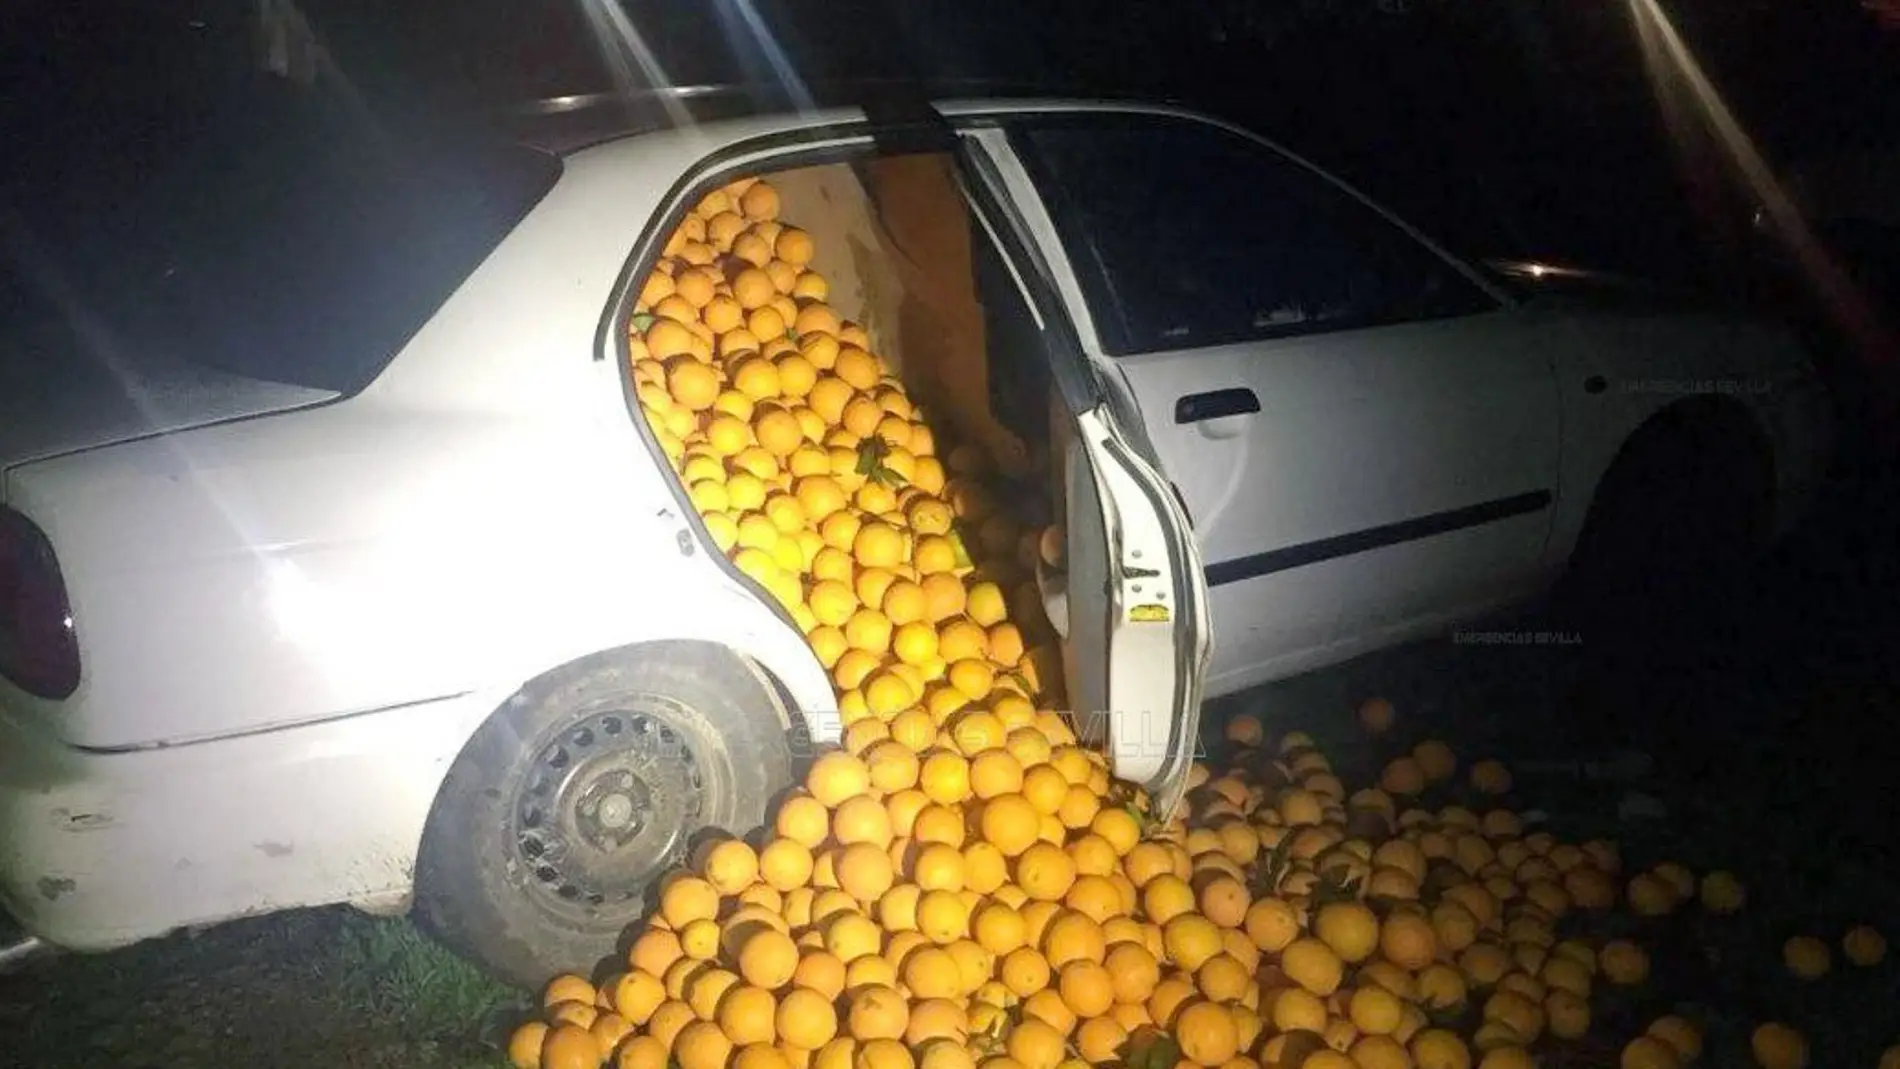 Uno de los coches llenos de naranjas